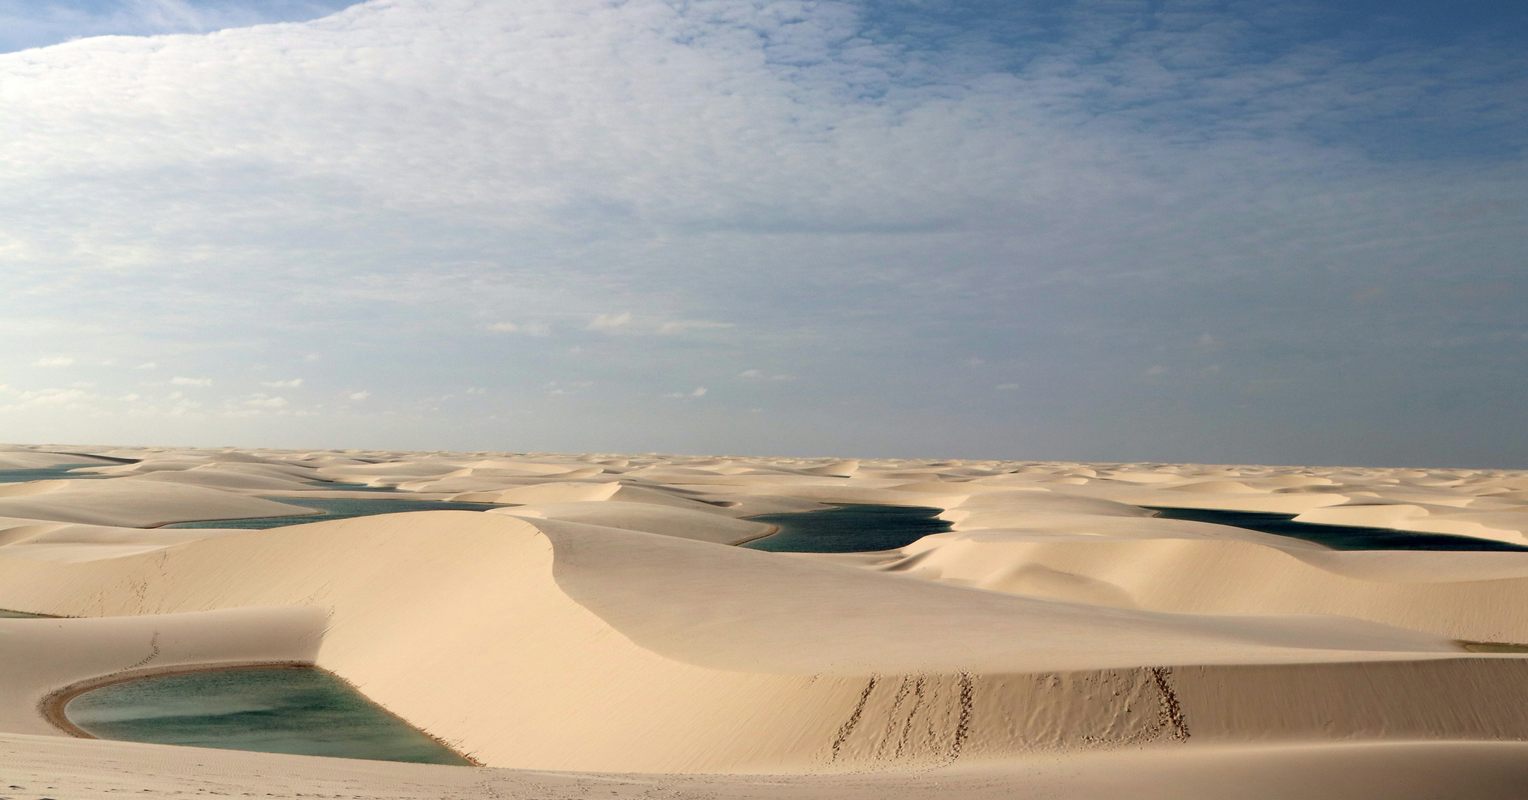 The rolling sand dunes of Lençóis Maranhenses in Brazil.